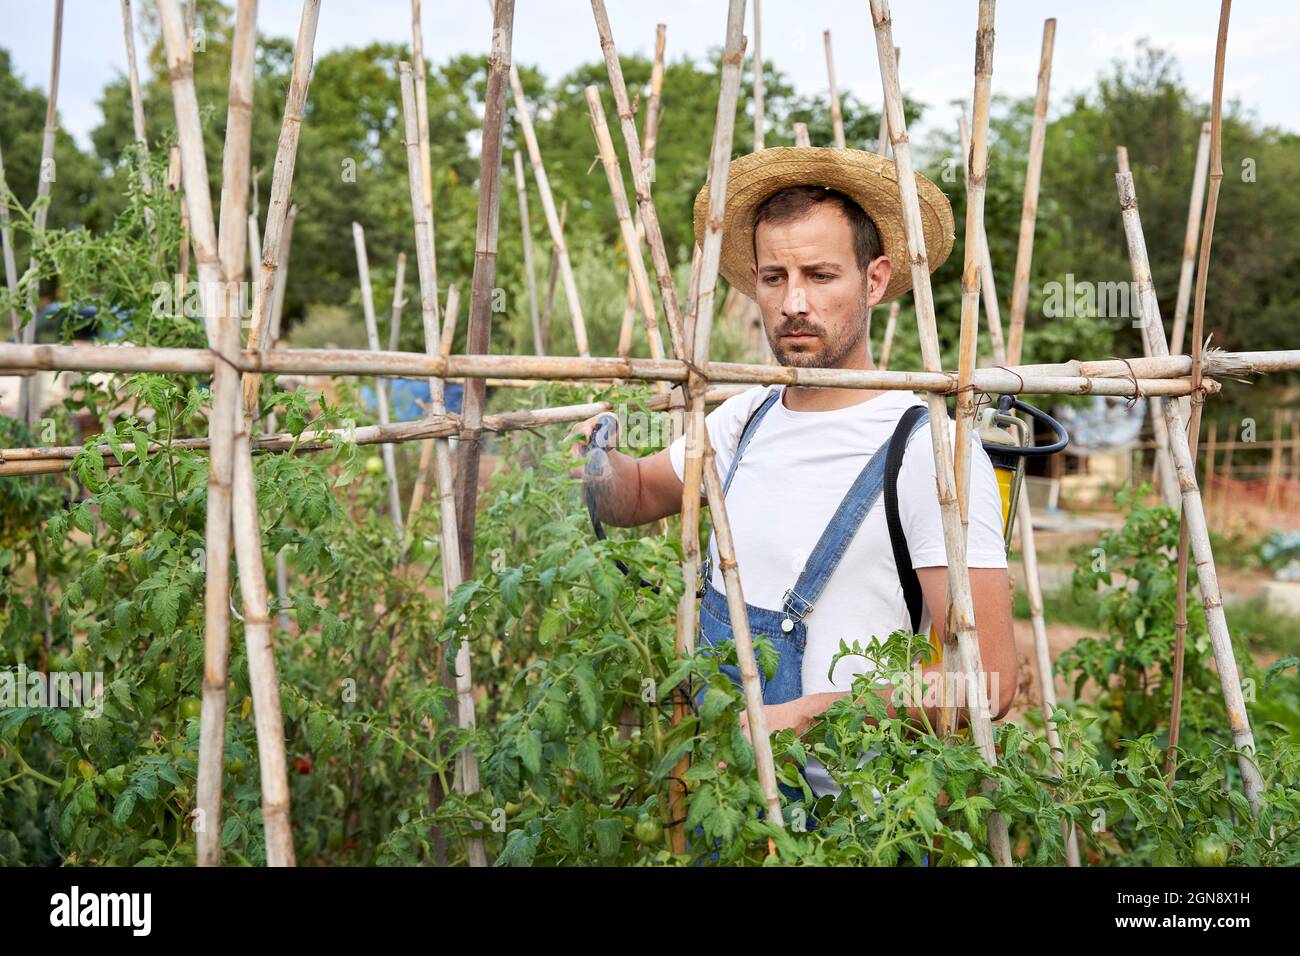 Maschio agricoltore spruzzando pesticidi sulle piante mentre lavora in campo agricolo Foto Stock